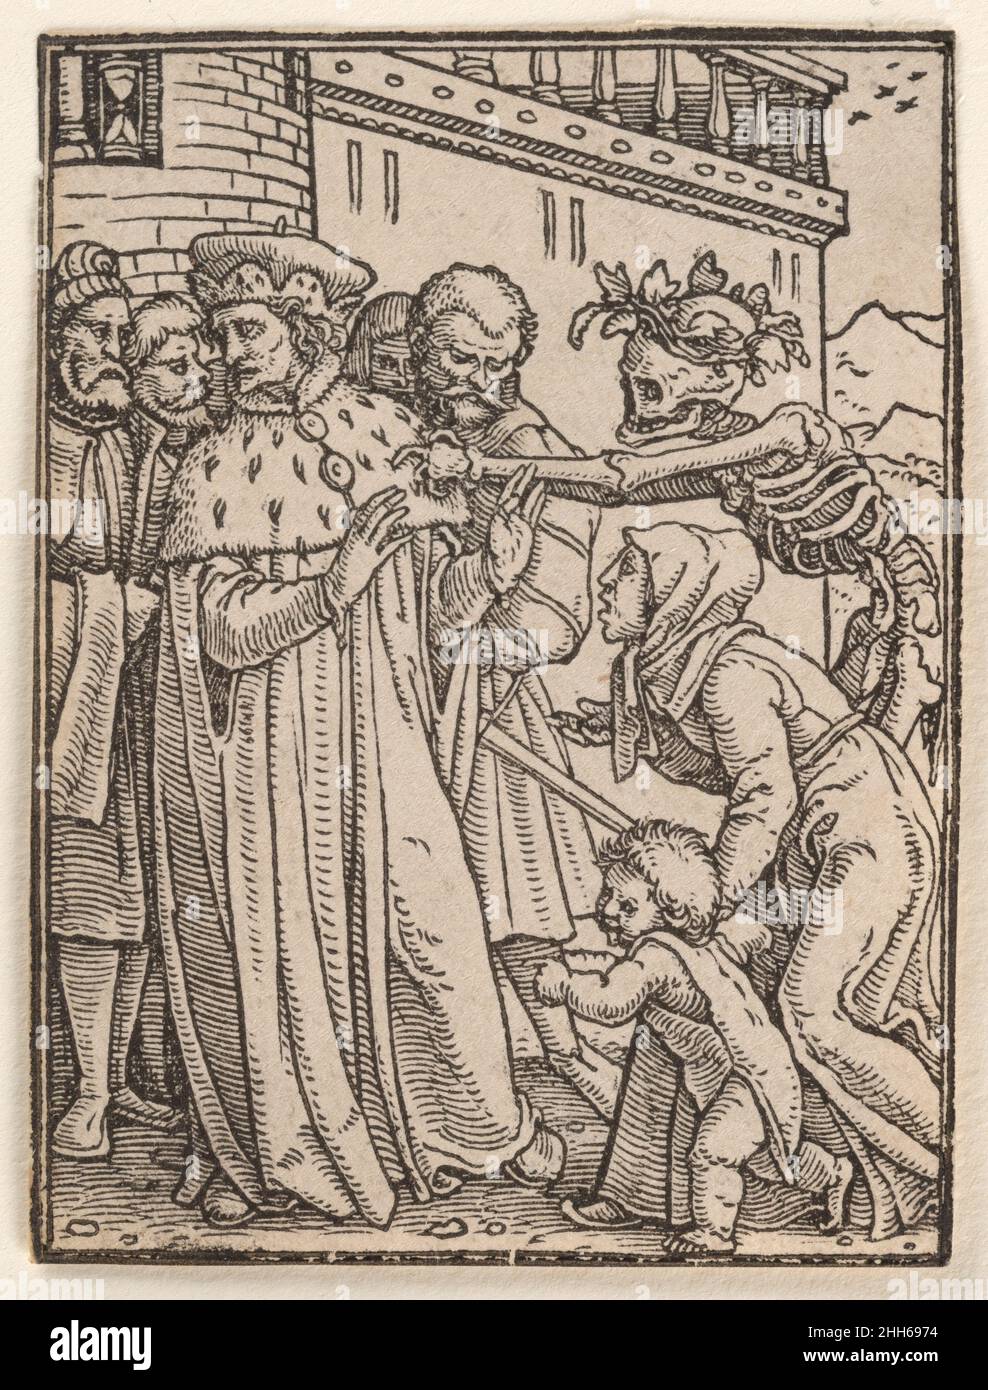 Der Herzog, aus dem Tanz des Todes ca. 1526, erschienen 1538 gestaltet von Hans Holbein dem Jüngeren. Der Herzog, aus dem Tanz des Todes. Gestaltet von Hans Holbein dem Jüngeren (deutsch, Augsburg 1497/98–1543 London). 1526, veröffentlicht 1538. Holzschnitt. Ausdrucke Stockfoto